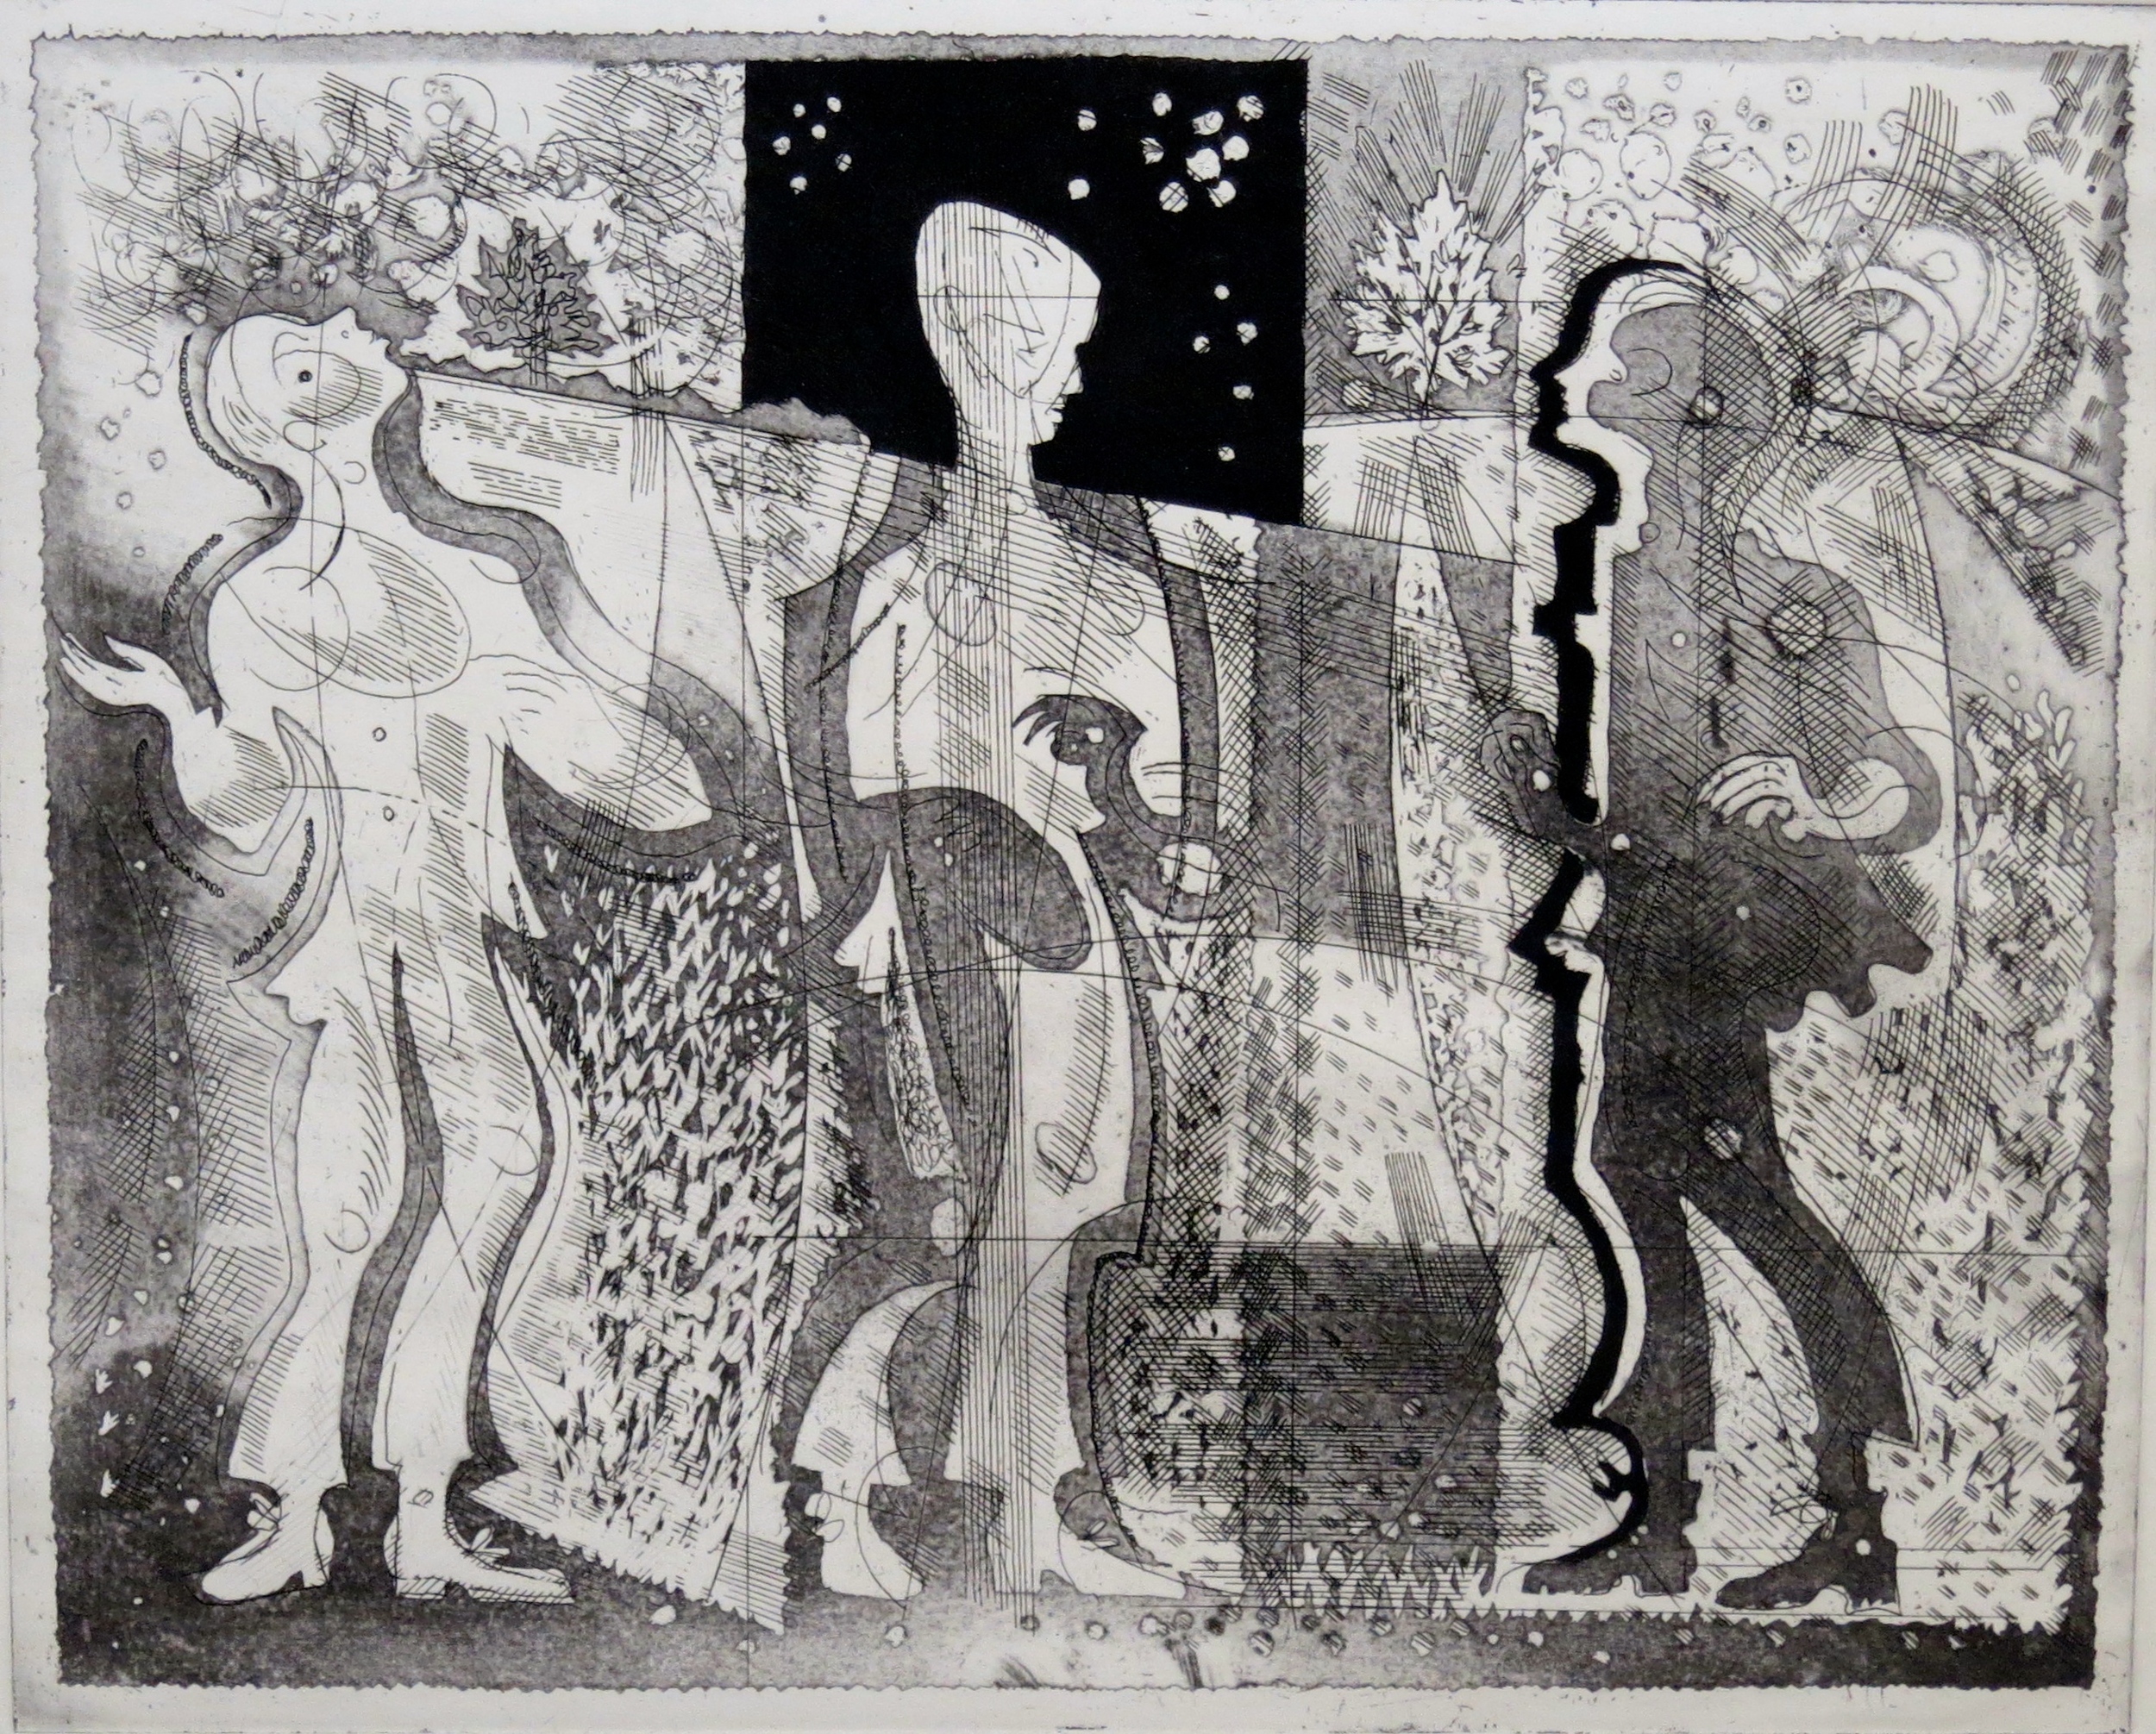  Three Figures, c1985 Etching 31 x 38 cm &nbsp; &nbsp; &nbsp; &nbsp; &nbsp; &nbsp;&nbsp; 